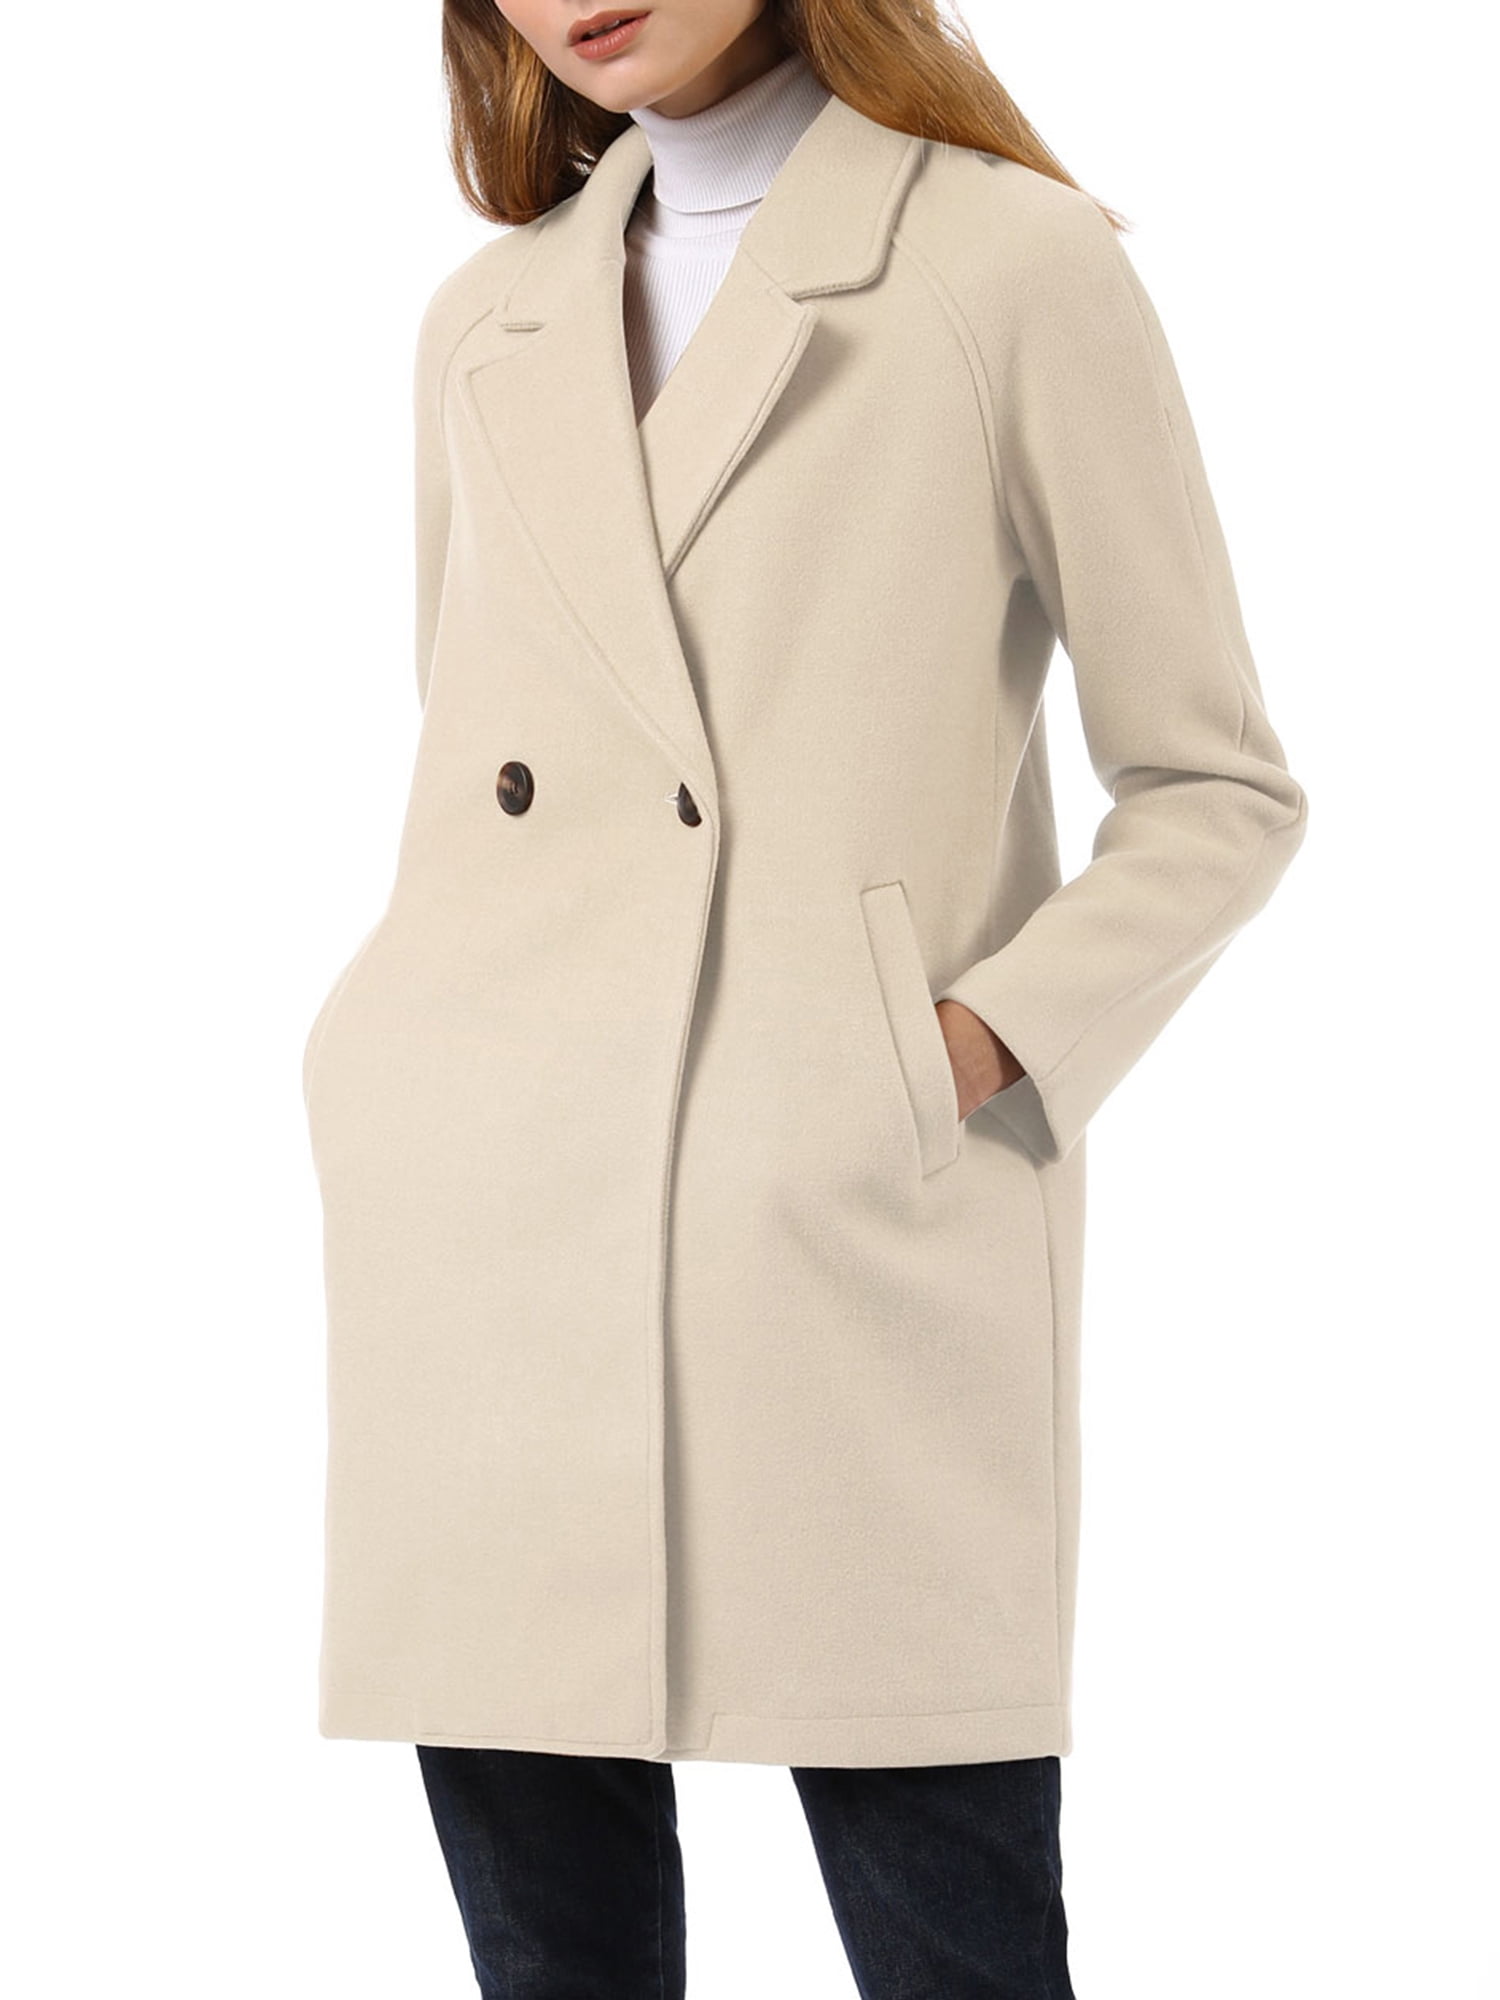 Women Suit Blazer Open Front Long Sleeve Work Office Jackets Blazer Notched Lapel Double Breasted Raglan Winter Coats 